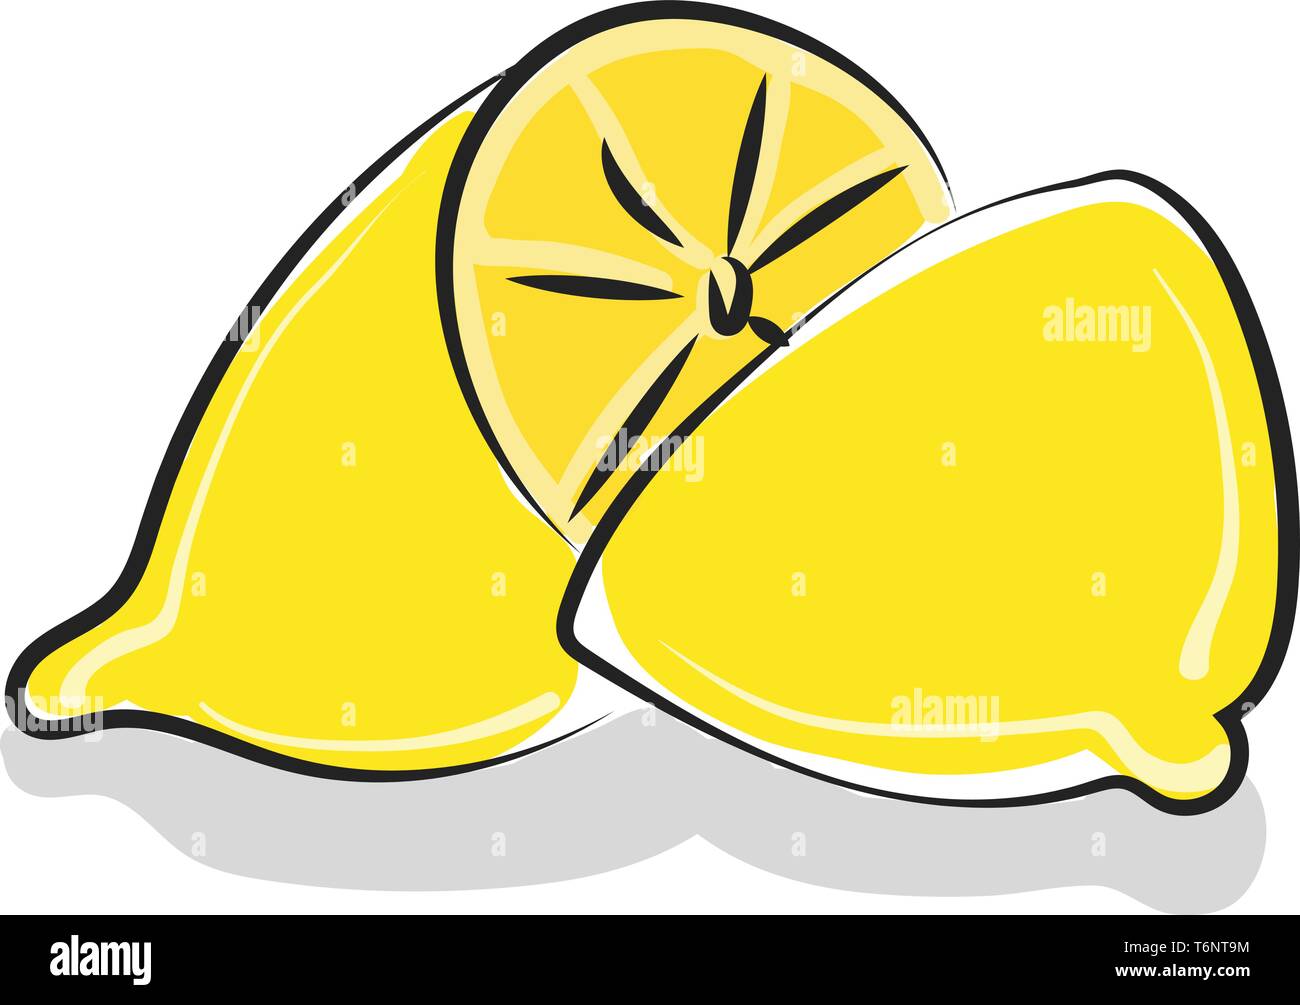 Clipart di un limone intero tagliato in due metà disuguali è tutto pronto per essere compresso in una tazza di gustoso succo di limone vettore di disegno a colori o illustratio Illustrazione Vettoriale